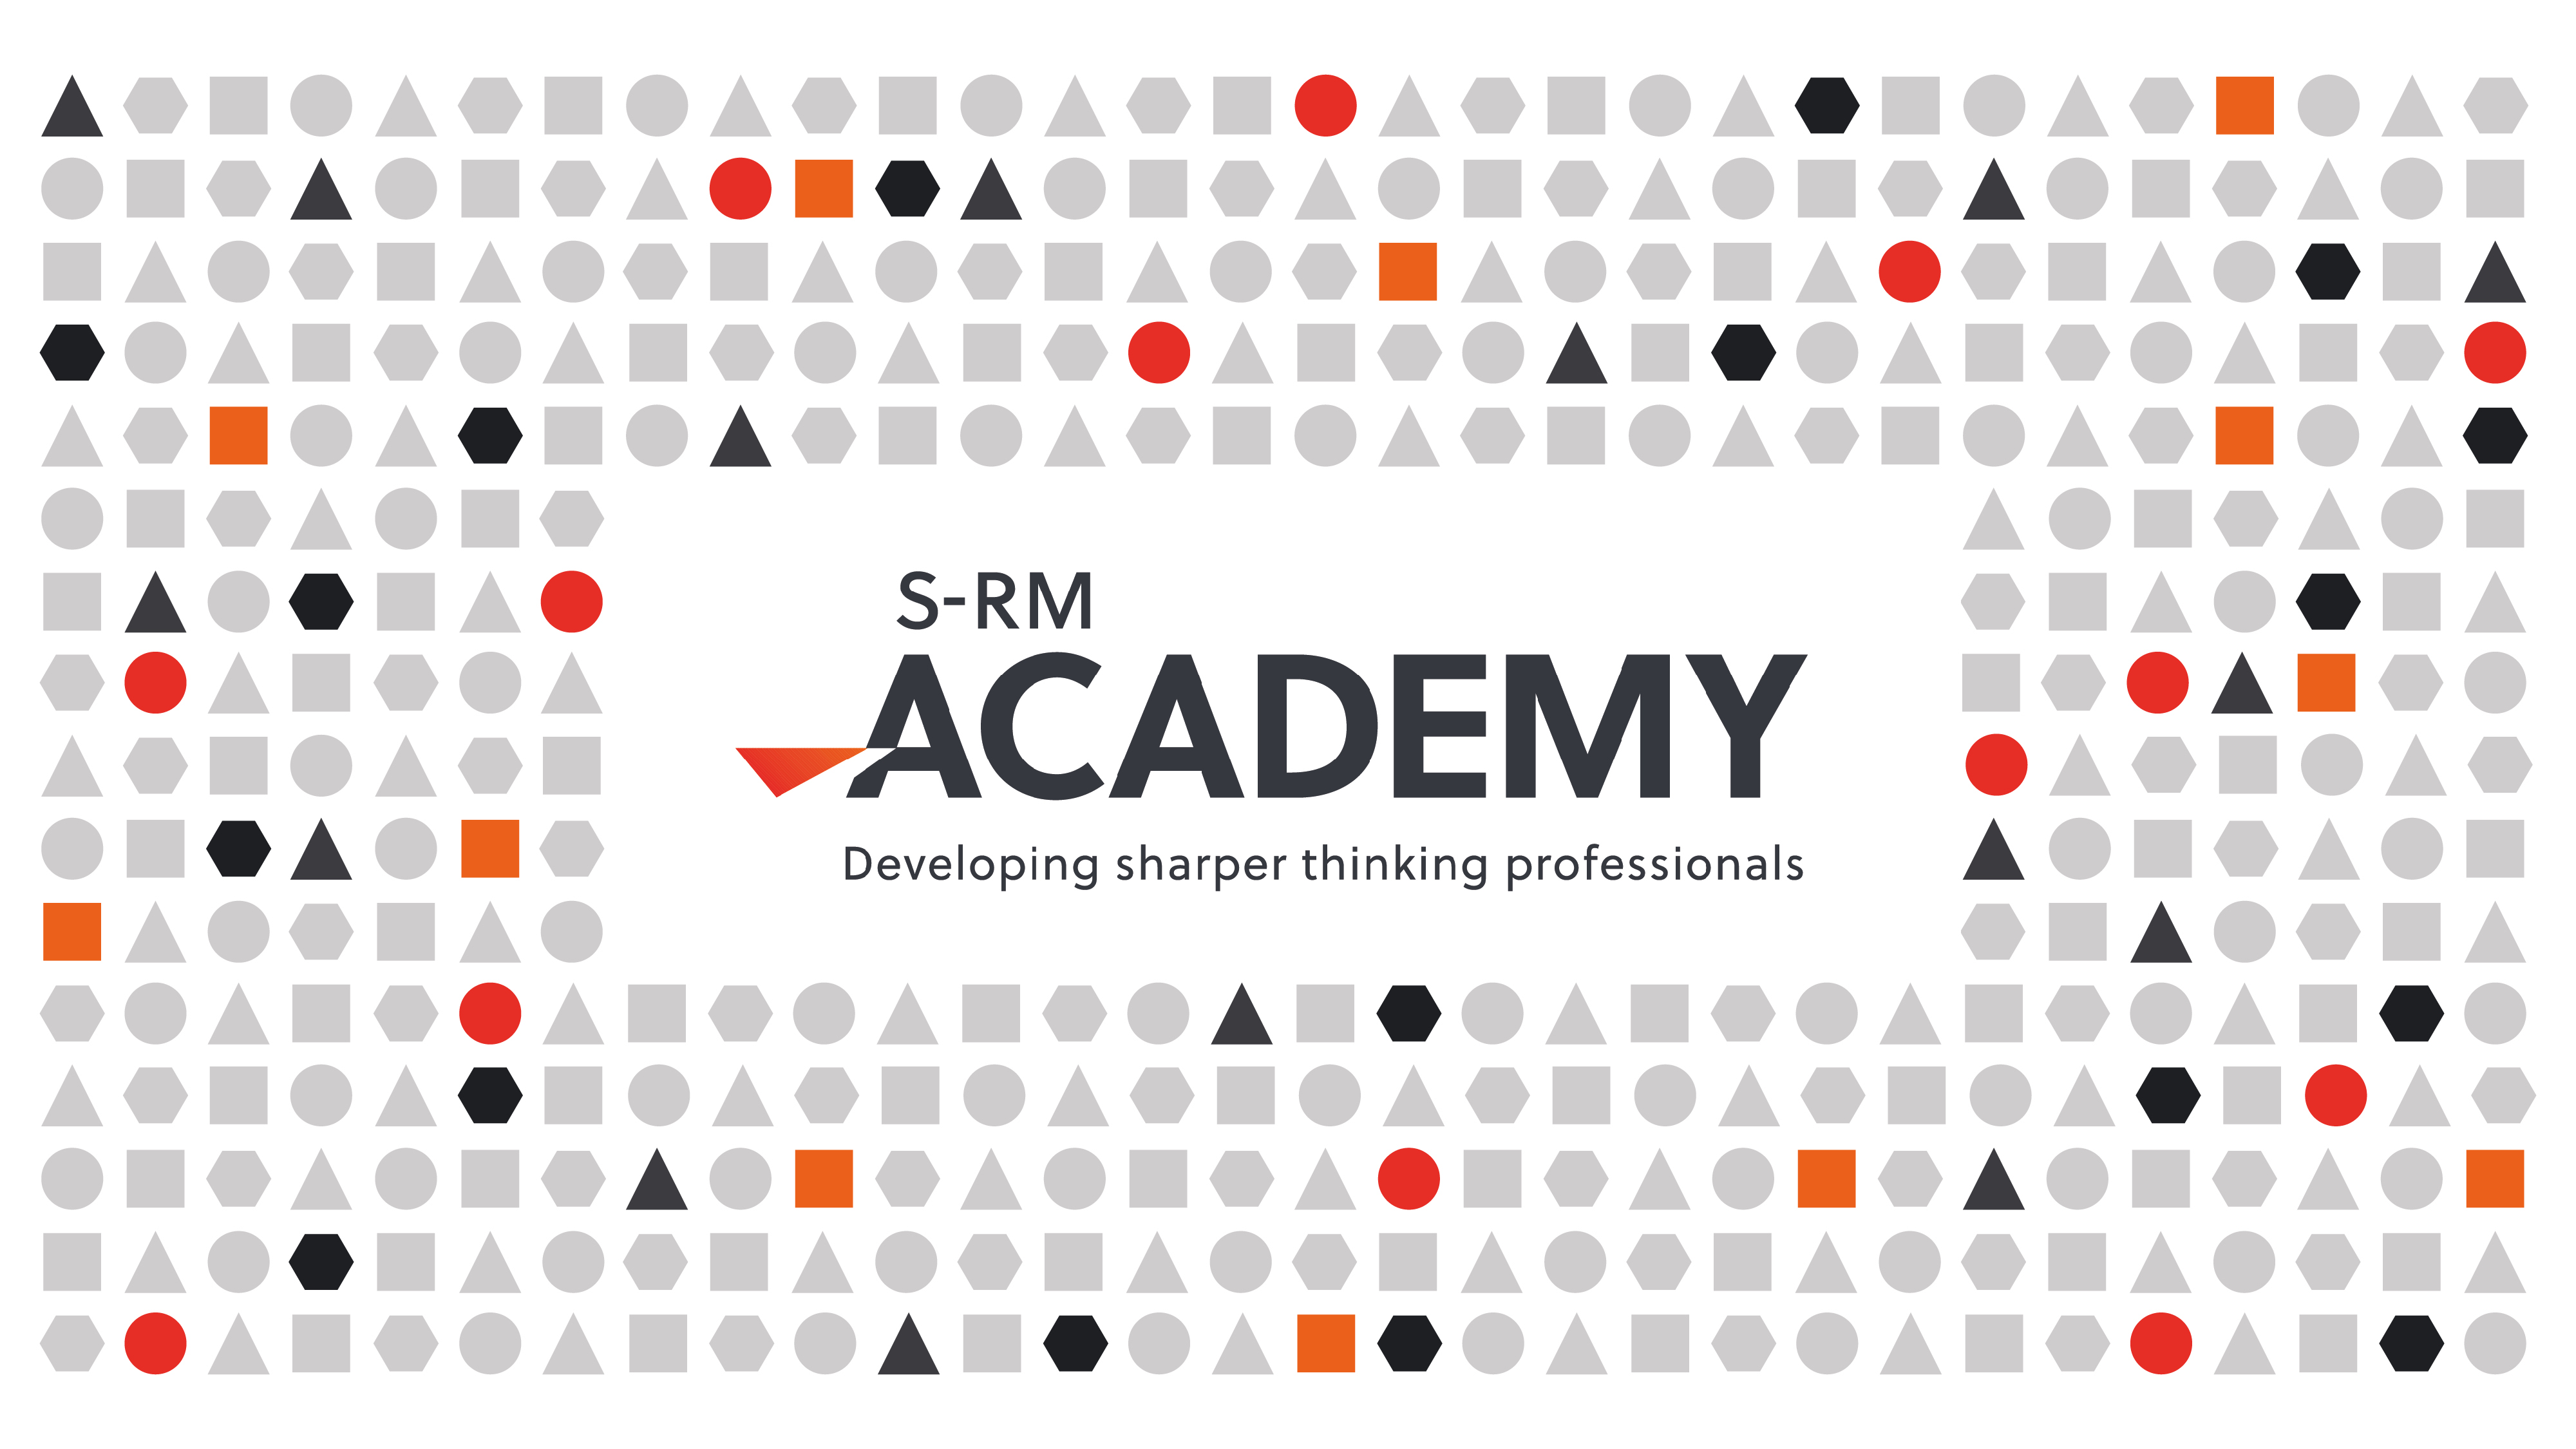 S-RM Academy